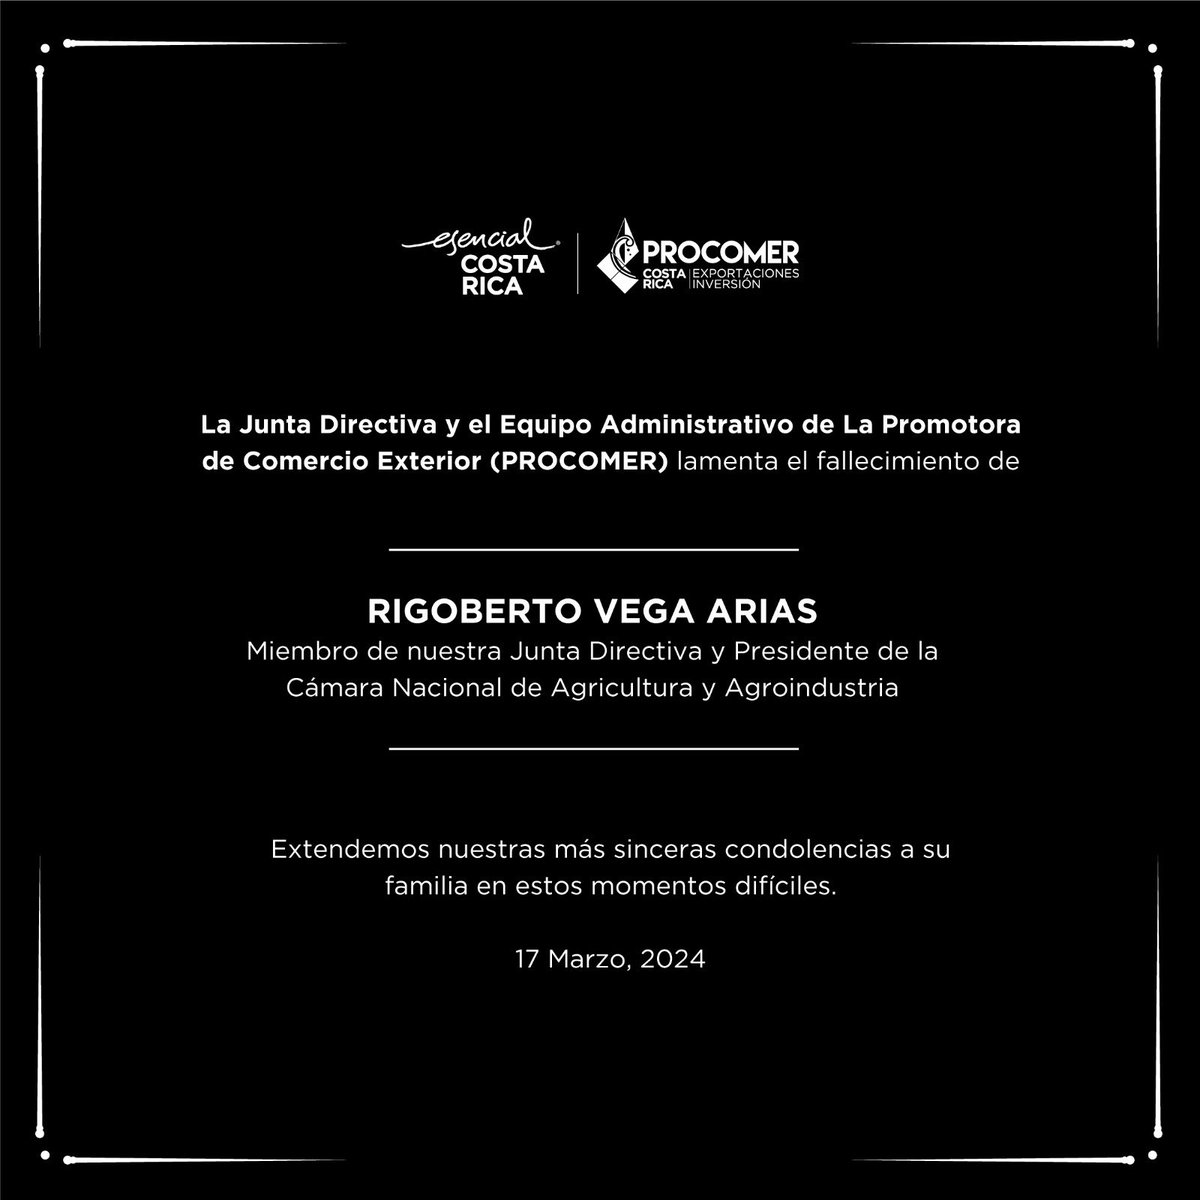 Lamentamos el fallecimiento del señor Rigoberto Vega Arias miembro de nuestra Junta Directiva.